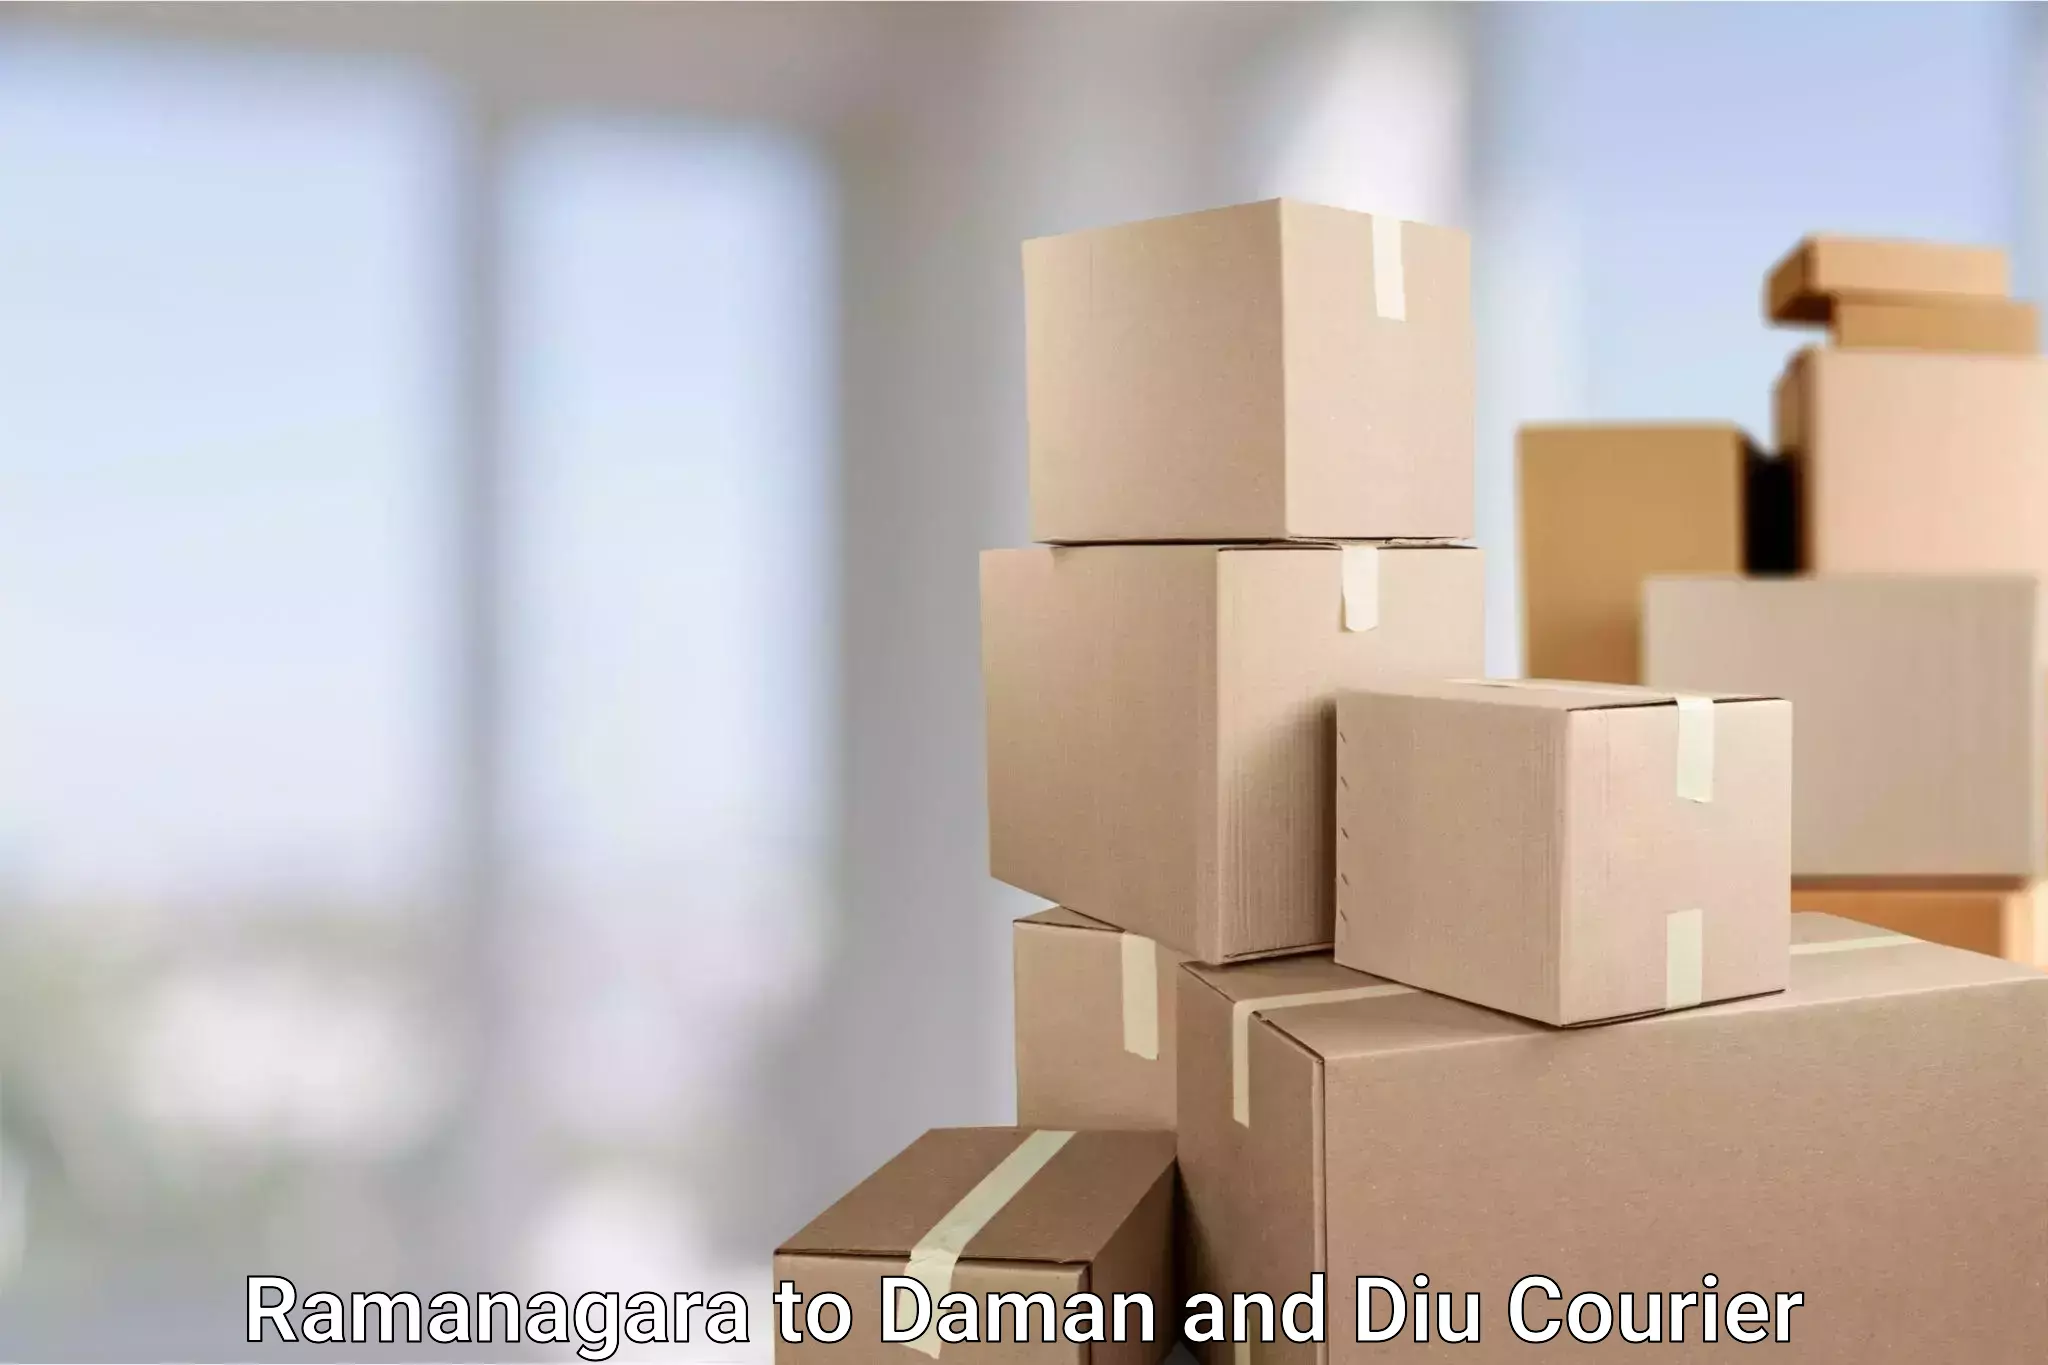 International parcel service Ramanagara to Daman and Diu